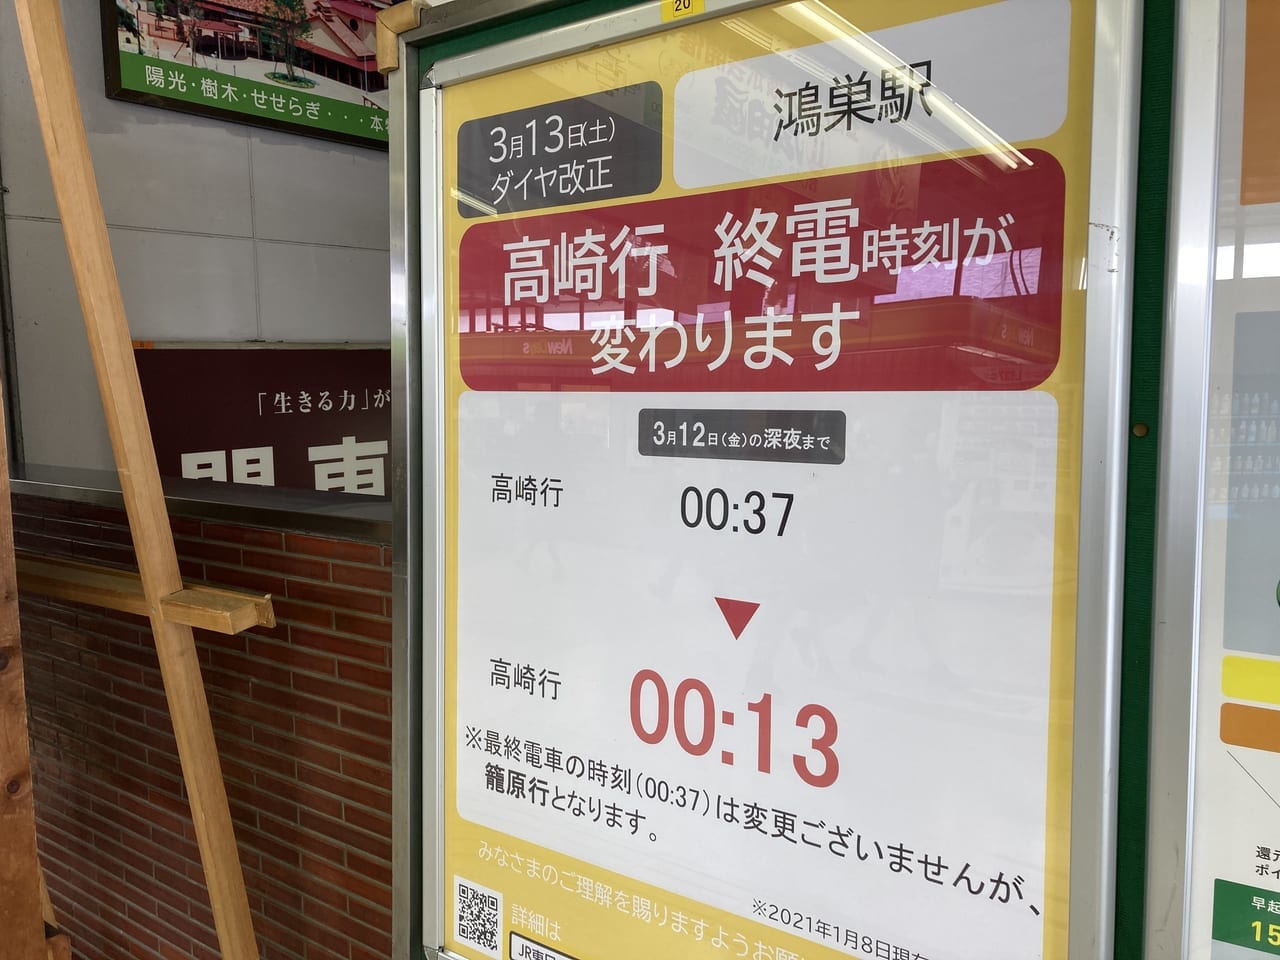 鴻巣駅高崎行終電時刻の繰り上げのお知らせ